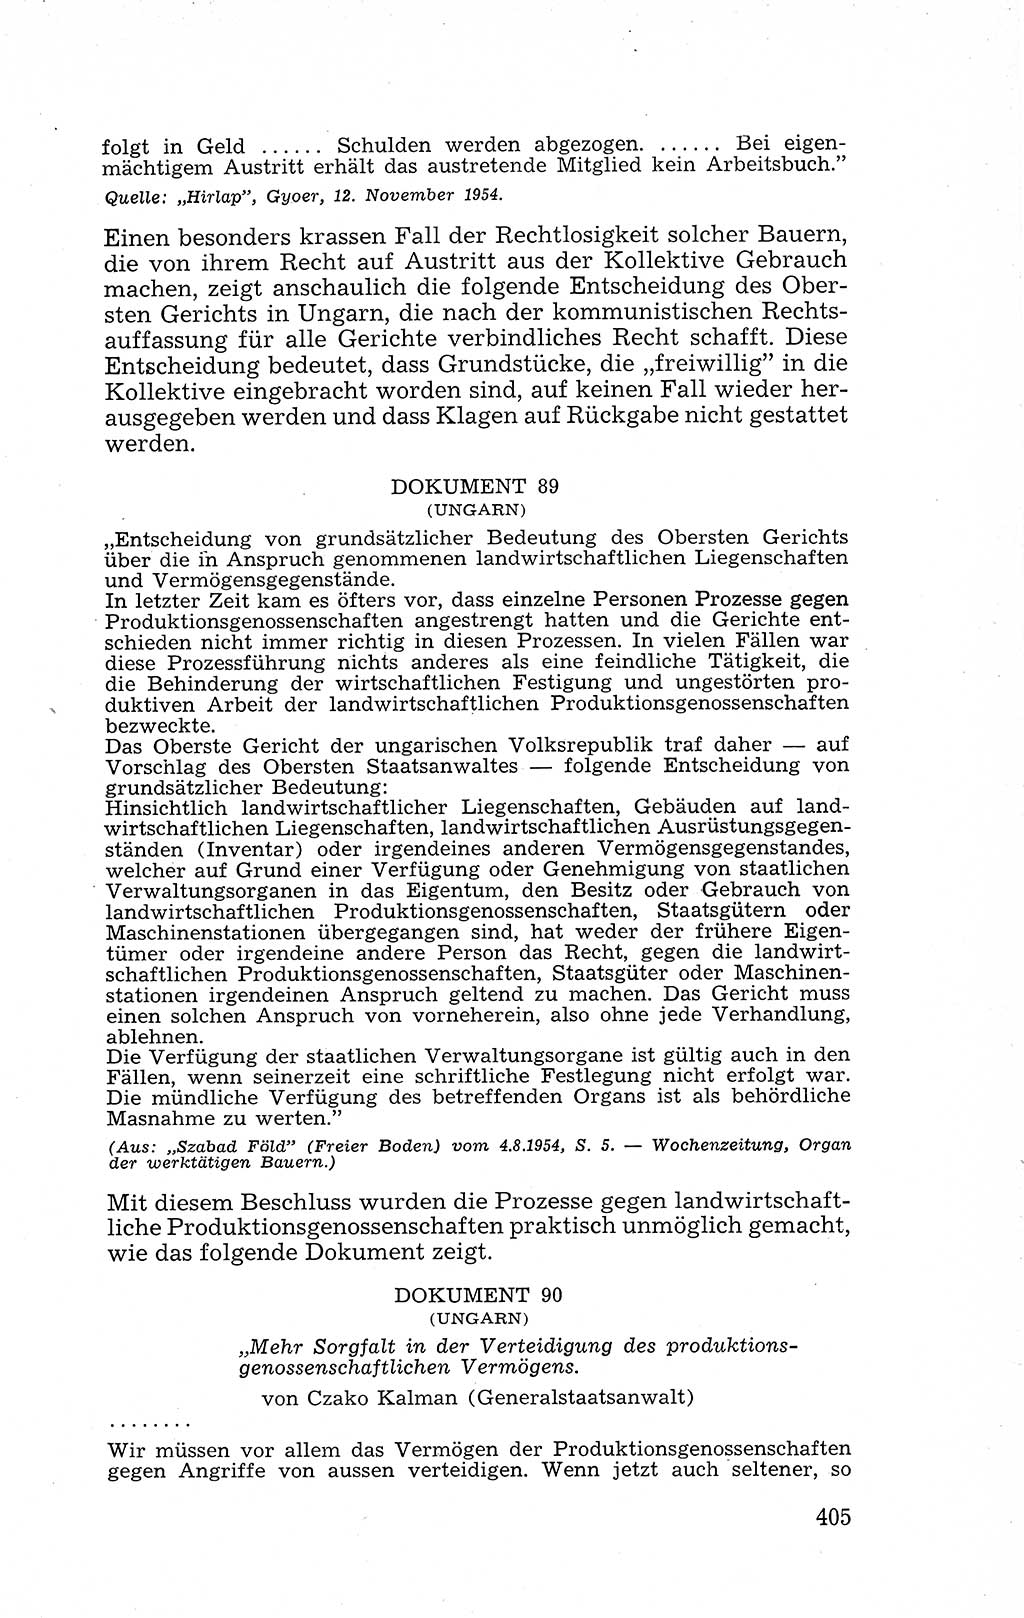 Recht in Fesseln, Dokumente, Internationale Juristen-Kommission [Bundesrepublik Deutschland (BRD)] 1955, Seite 405 (R. Dok. IJK BRD 1955, S. 405)